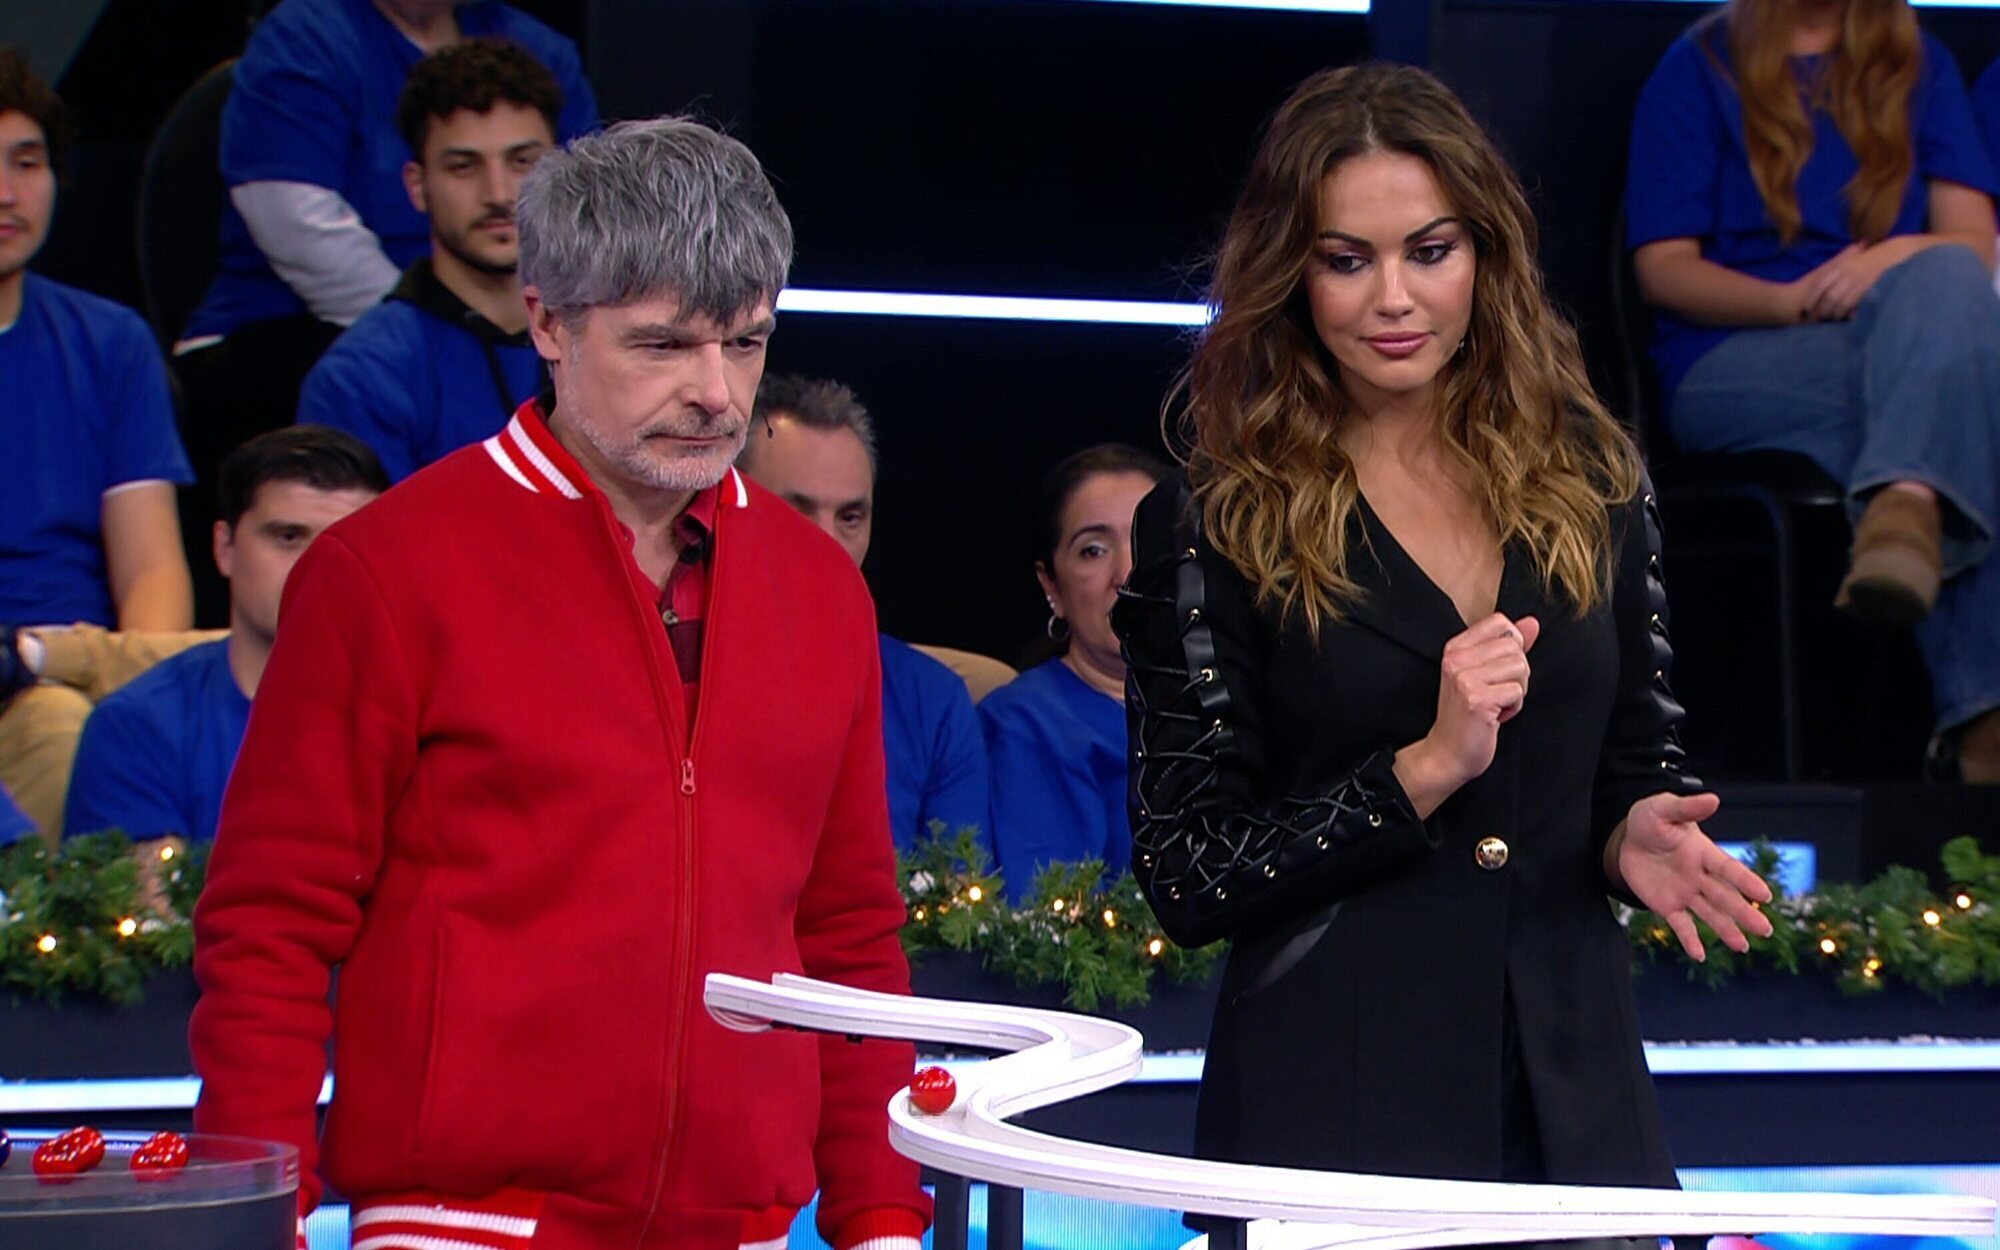 'A tu bola', el nuevo programa de Lara Álvarez, aterriza en Telecinco el sábado 23 de diciembre